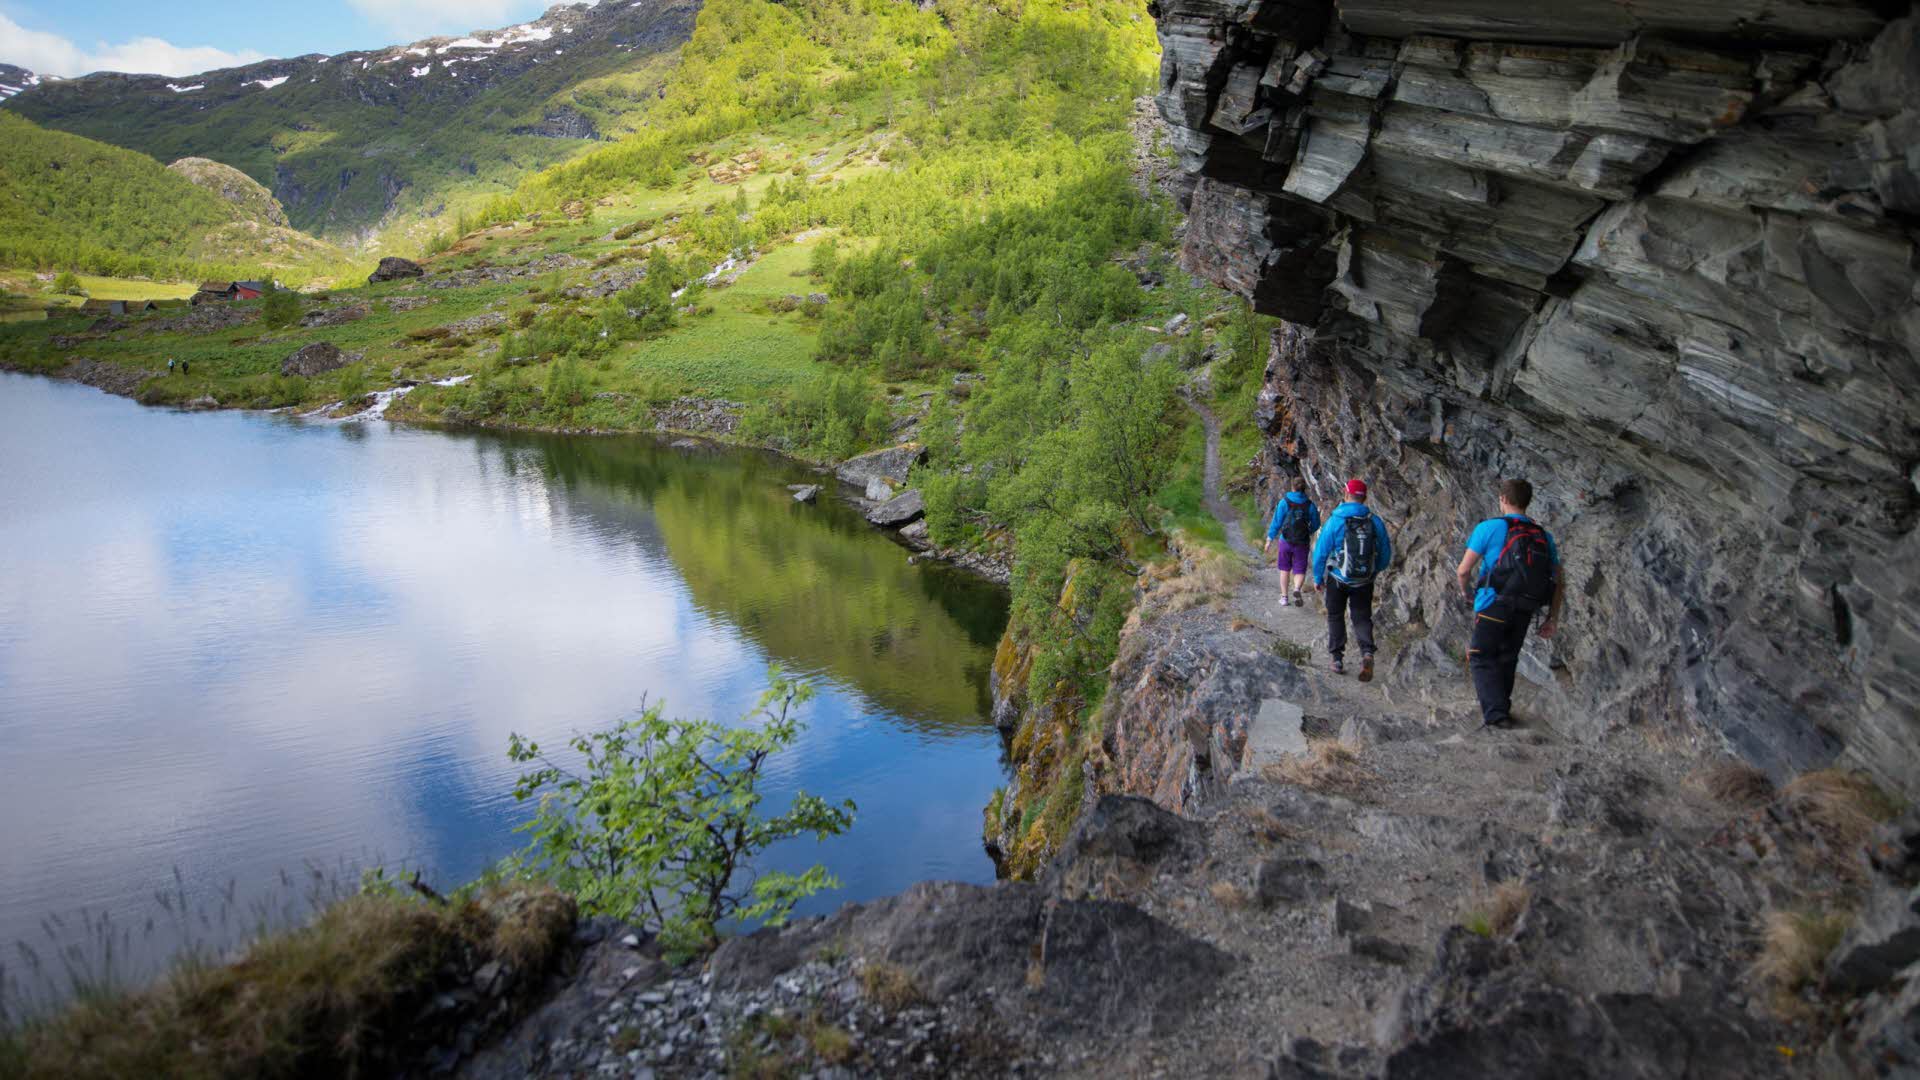 以湖面为背景，三个人正在陡峭多石的岩架上步行，穿越艾于兰山谷